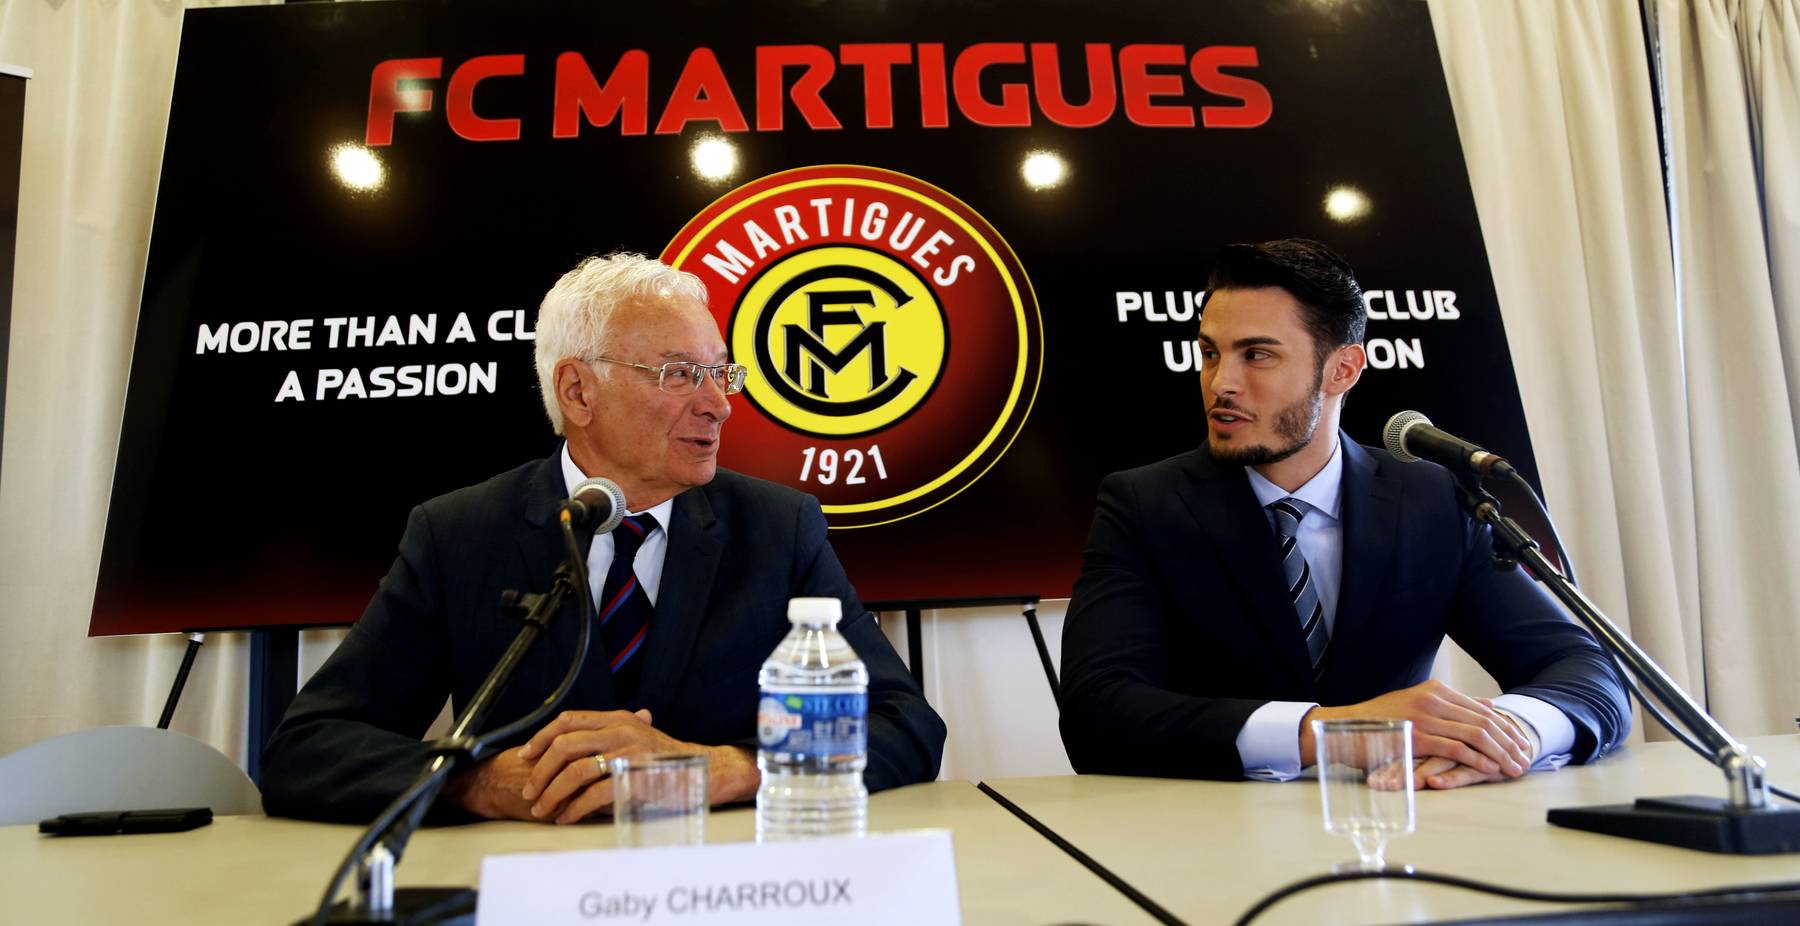 FC Martigues : le match se jouera au tribunal pour Baptiste Giabiconi